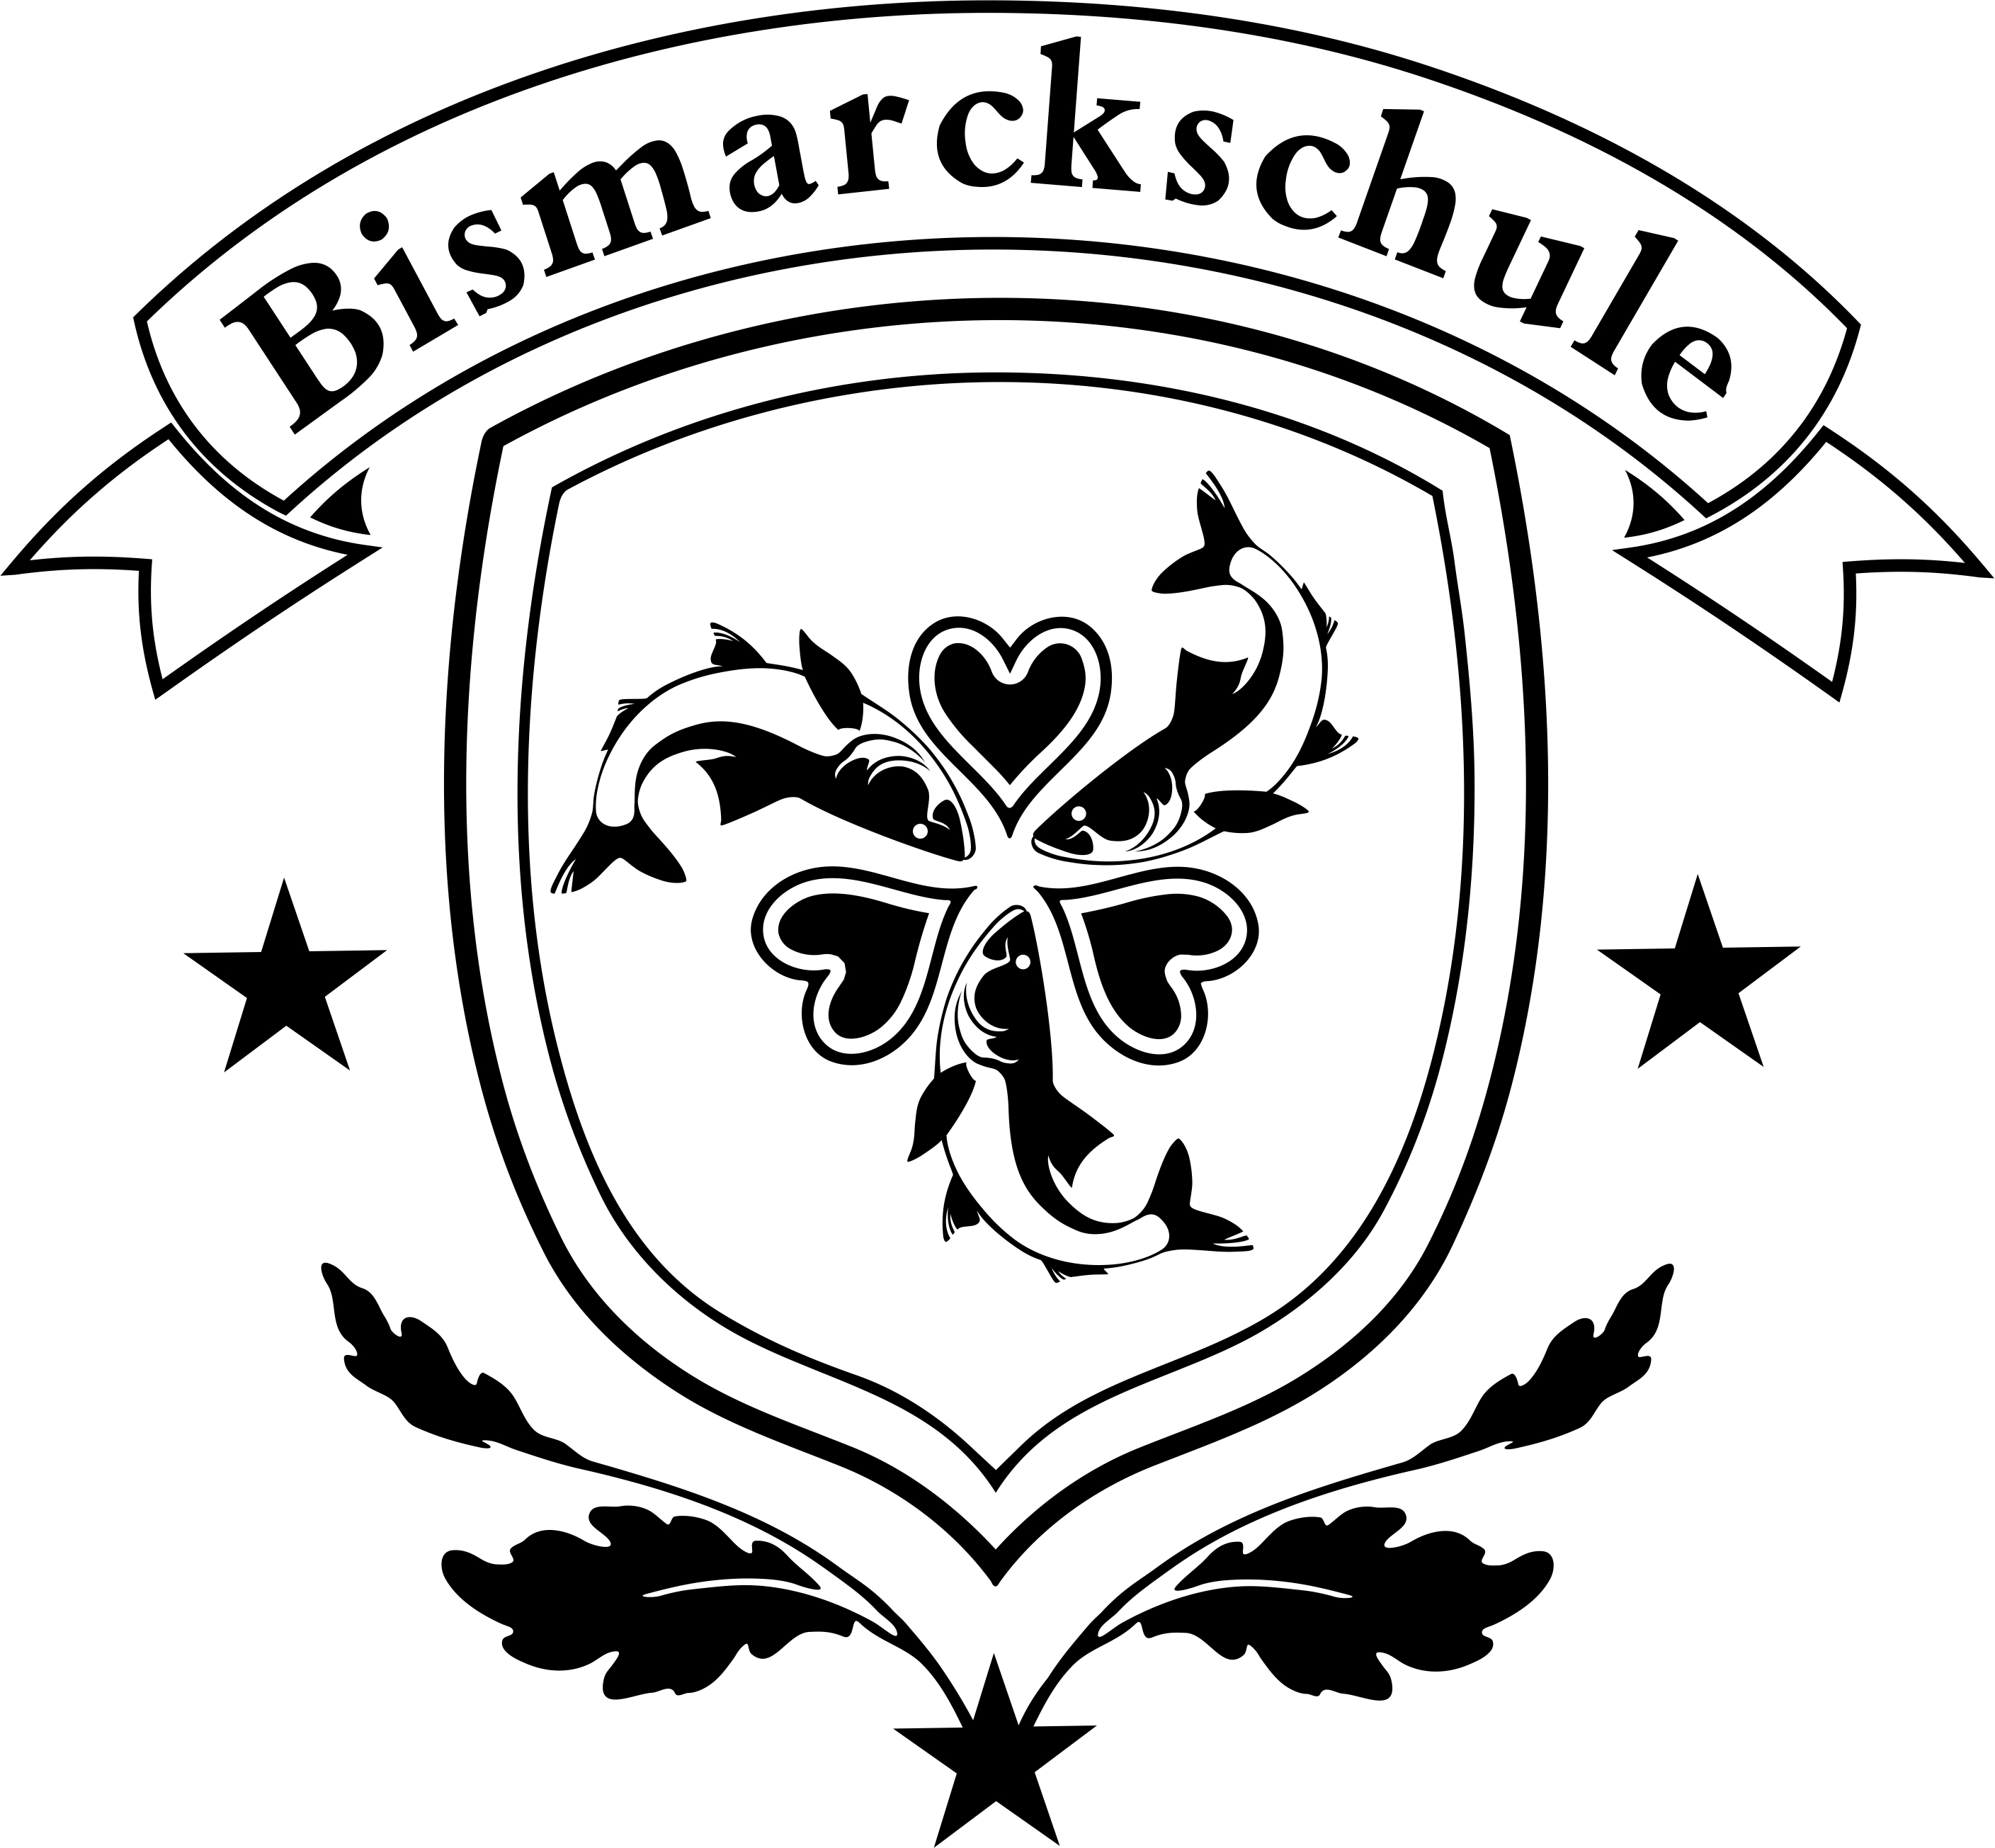 Bismarckschule